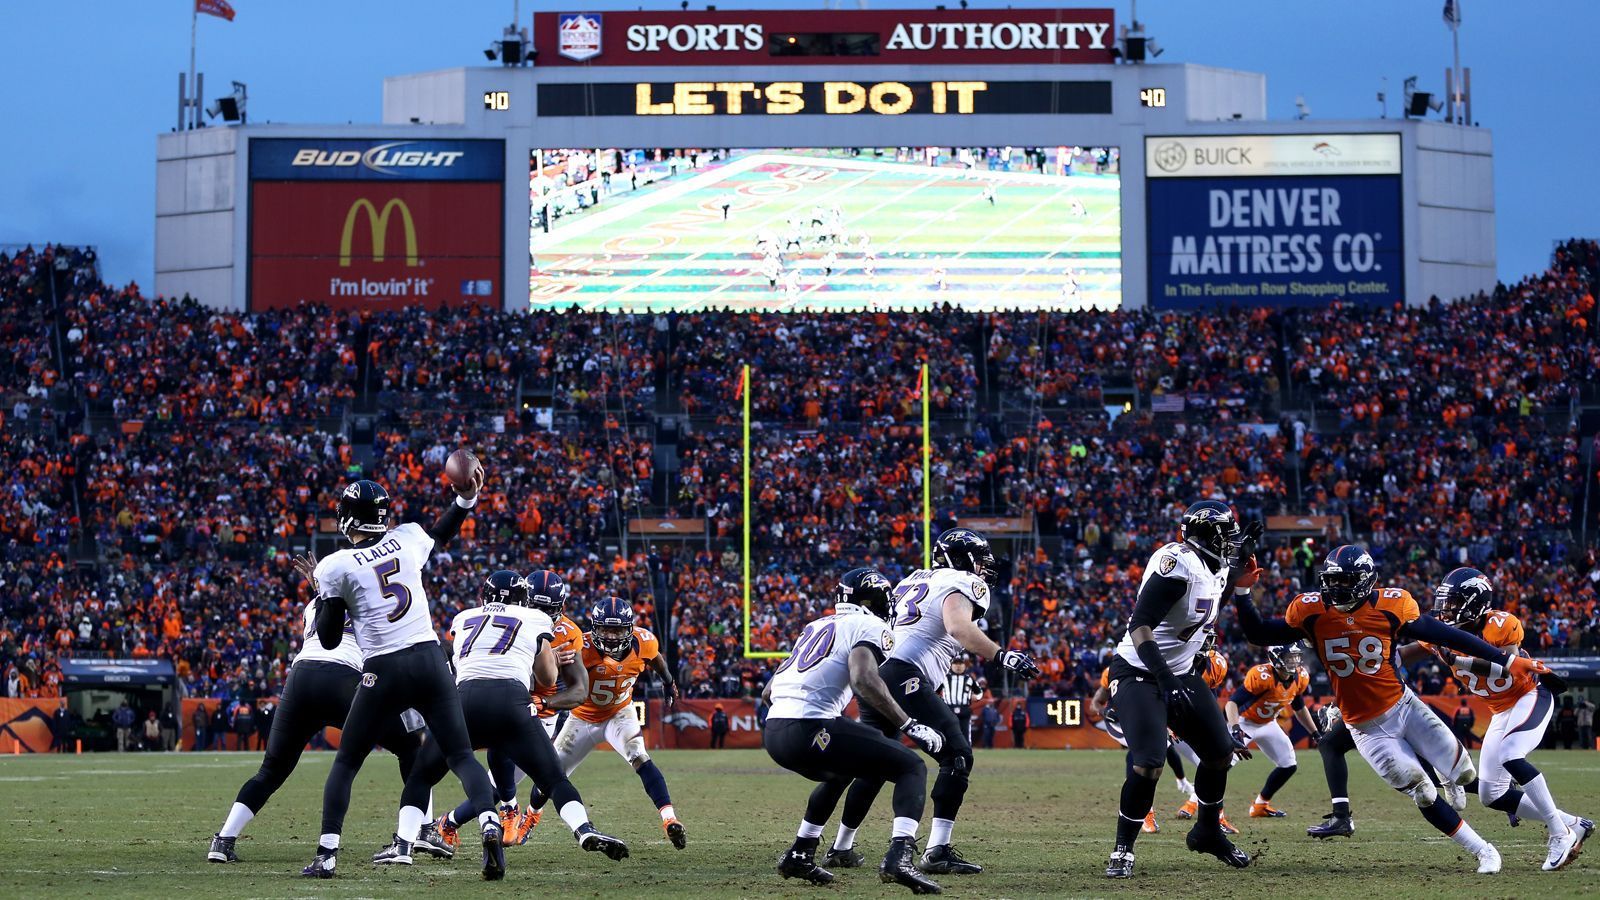 
                <strong>12. Januar 2013: Baltimore Ravens at Denver Broncos (Divisional Round)</strong><br>
                Mit dem neuen Hoffnungsträger Peyton Manning, der vor der Saison von den Colts gekommen war, sowie elf Siegen in Serie gingen die Broncos in ihr Heimspiel gegen die Baltimore Ravens. Heraus kam ein Spiel, das als "Mile High Miracle" in die Geschichtsbücher einging. Blöd für die Broncos: Das Wunder schafften die Ravens. Deren Quarterback Joe Flacco packte in der letzten Minute einen 70-Yards-Pass zum Touchdown aus, den die Defense völlig falsch einschätzte. Es folgte eine doppelte Overtime, in der schließlich Rookie-Kicker Justin Tucker mit einem Field Goal aus 47 Yards für den 38:35-Sieg für die Ravens sorgte. Deren Triumphzug ging danach weiter. Am Ende stand der Super-Bowl-Sieg gegen die San Francisco 49ers.
              